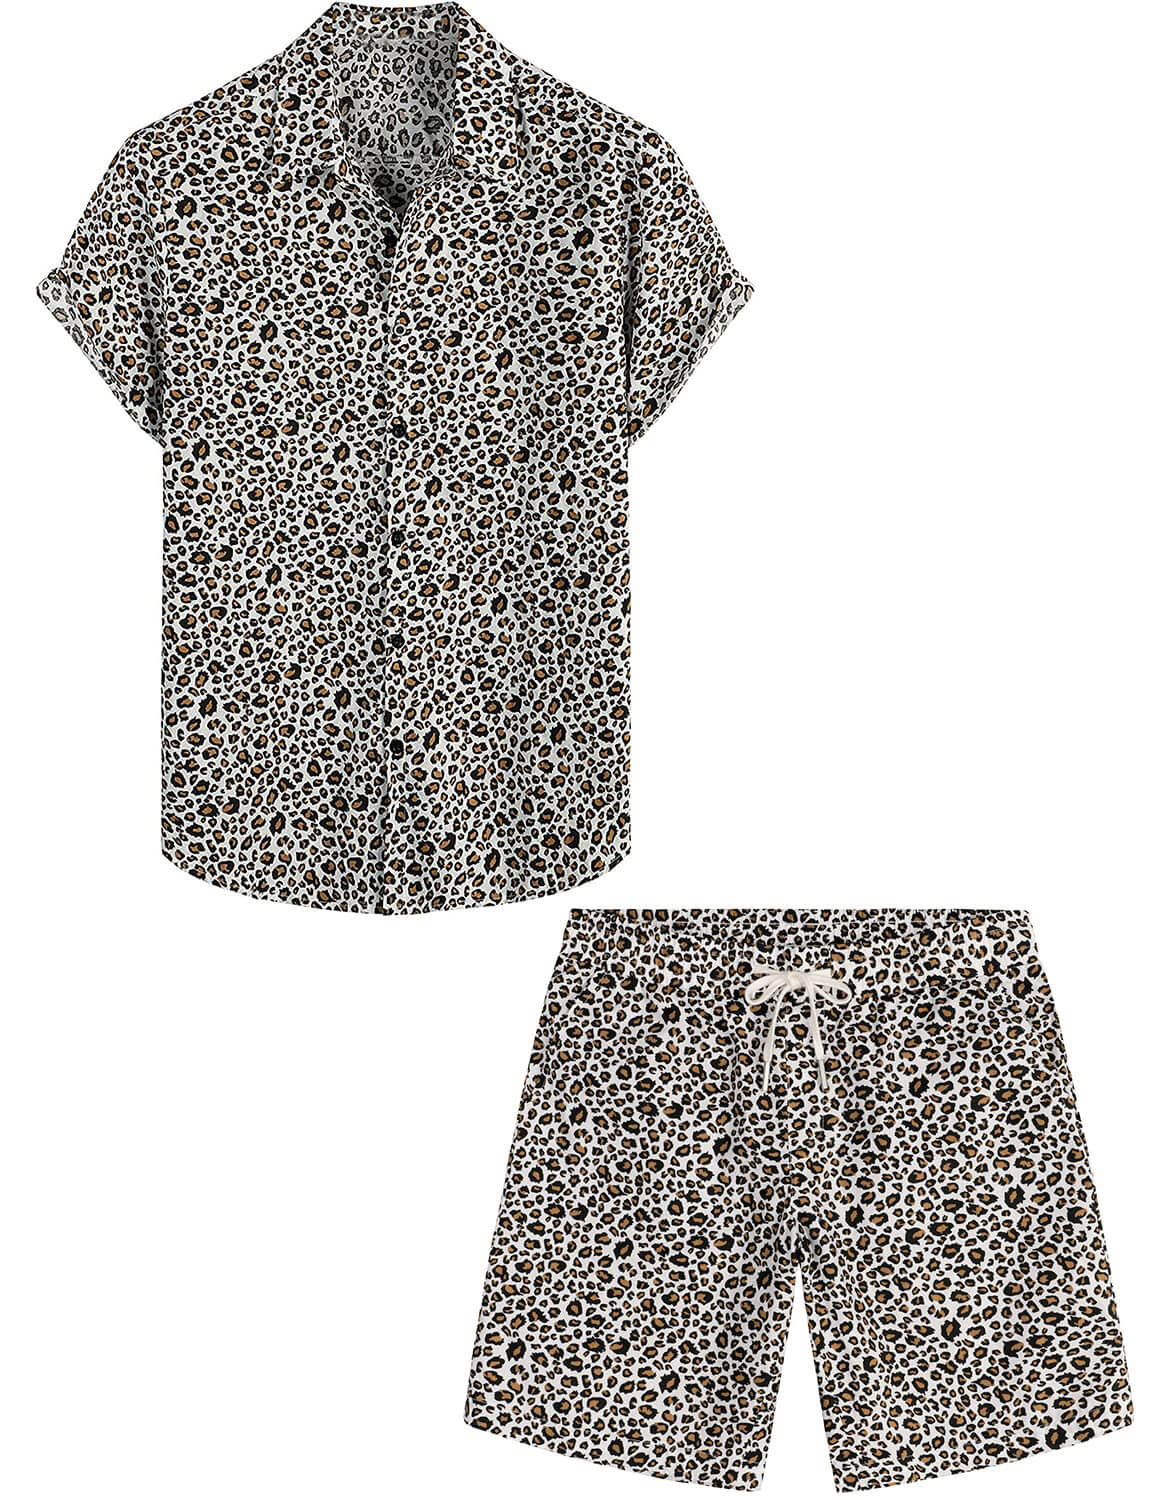 Men's Blue Flamingo Beach Button CottonSummer Shirt and Shorts Set